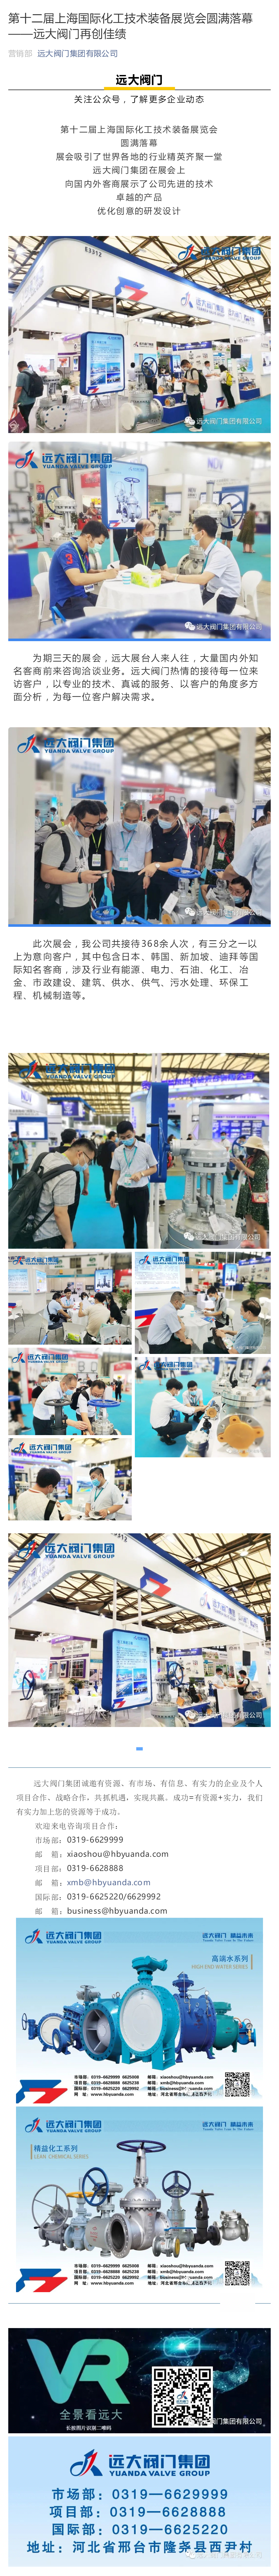 第十二届上海国际化工技术装备展览会圆满落幕--leyu乐鱼网页版注册录入口
再创佳绩